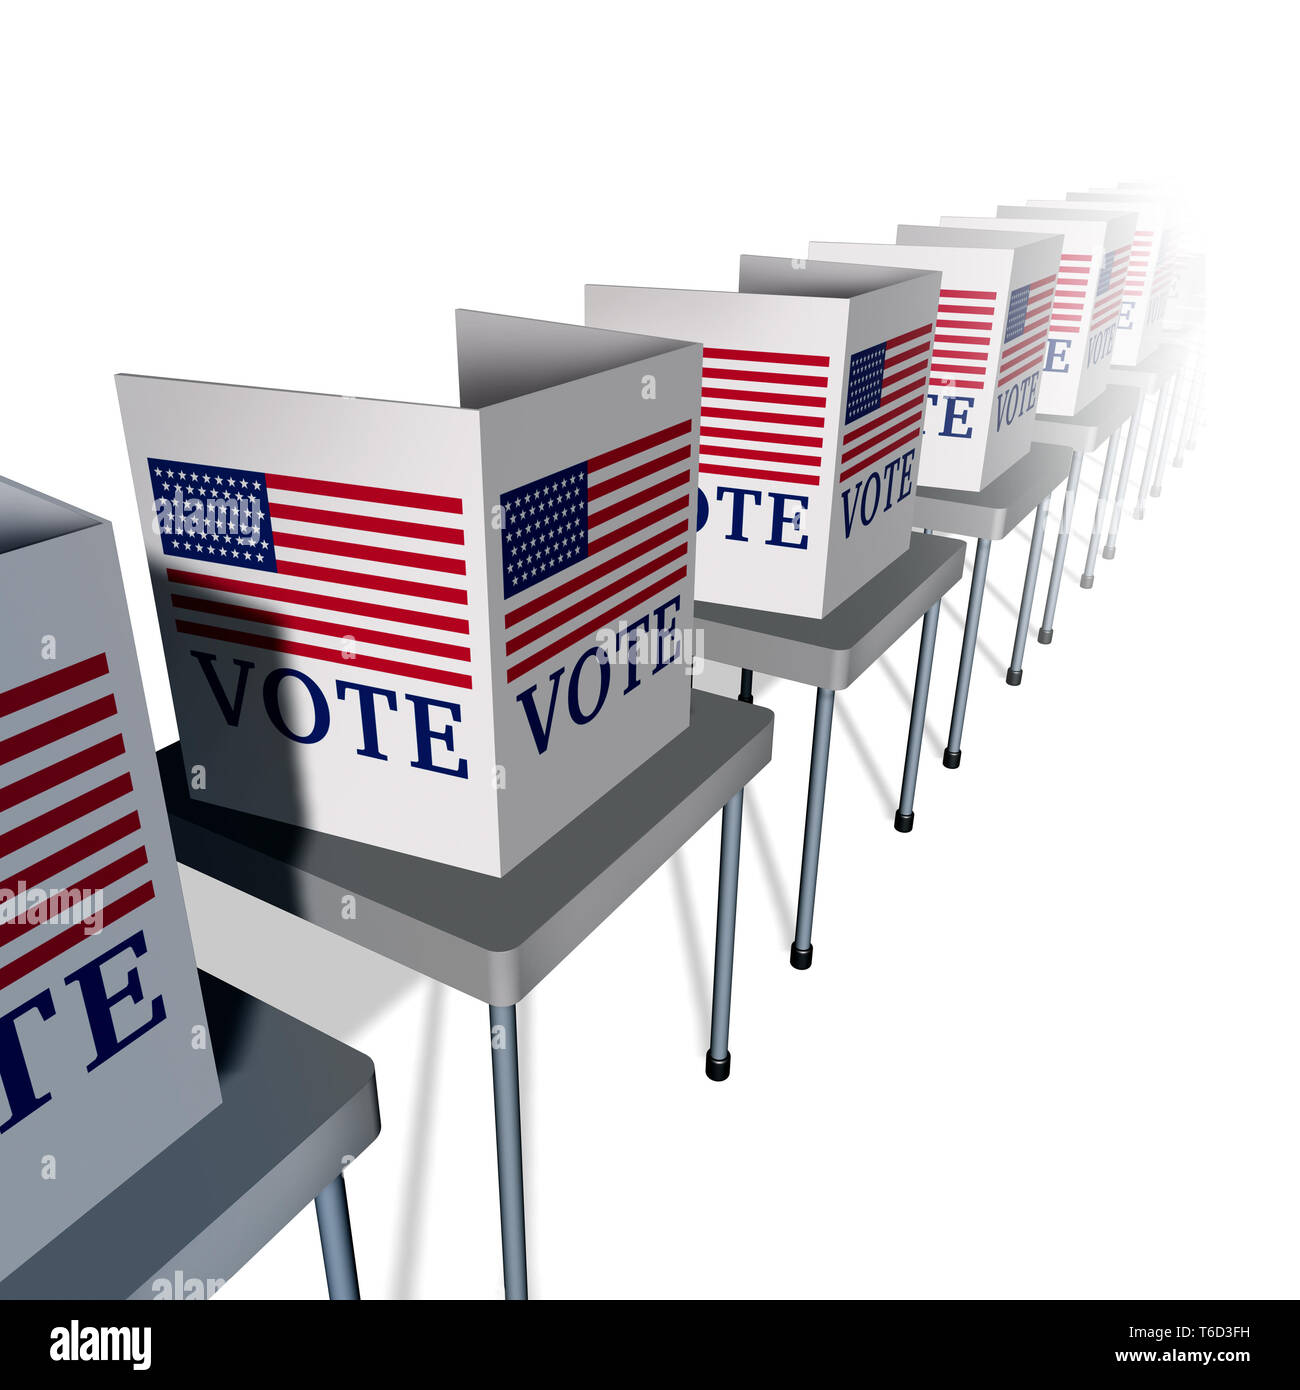 USA Abstimmung und die Vereinigten Staaten stimmen als Wahllokal mit Wähler Ständen für einen amerikanischen Präsidenten oder der Regierung Wahl zum Senat oder Kongress. Stockfoto